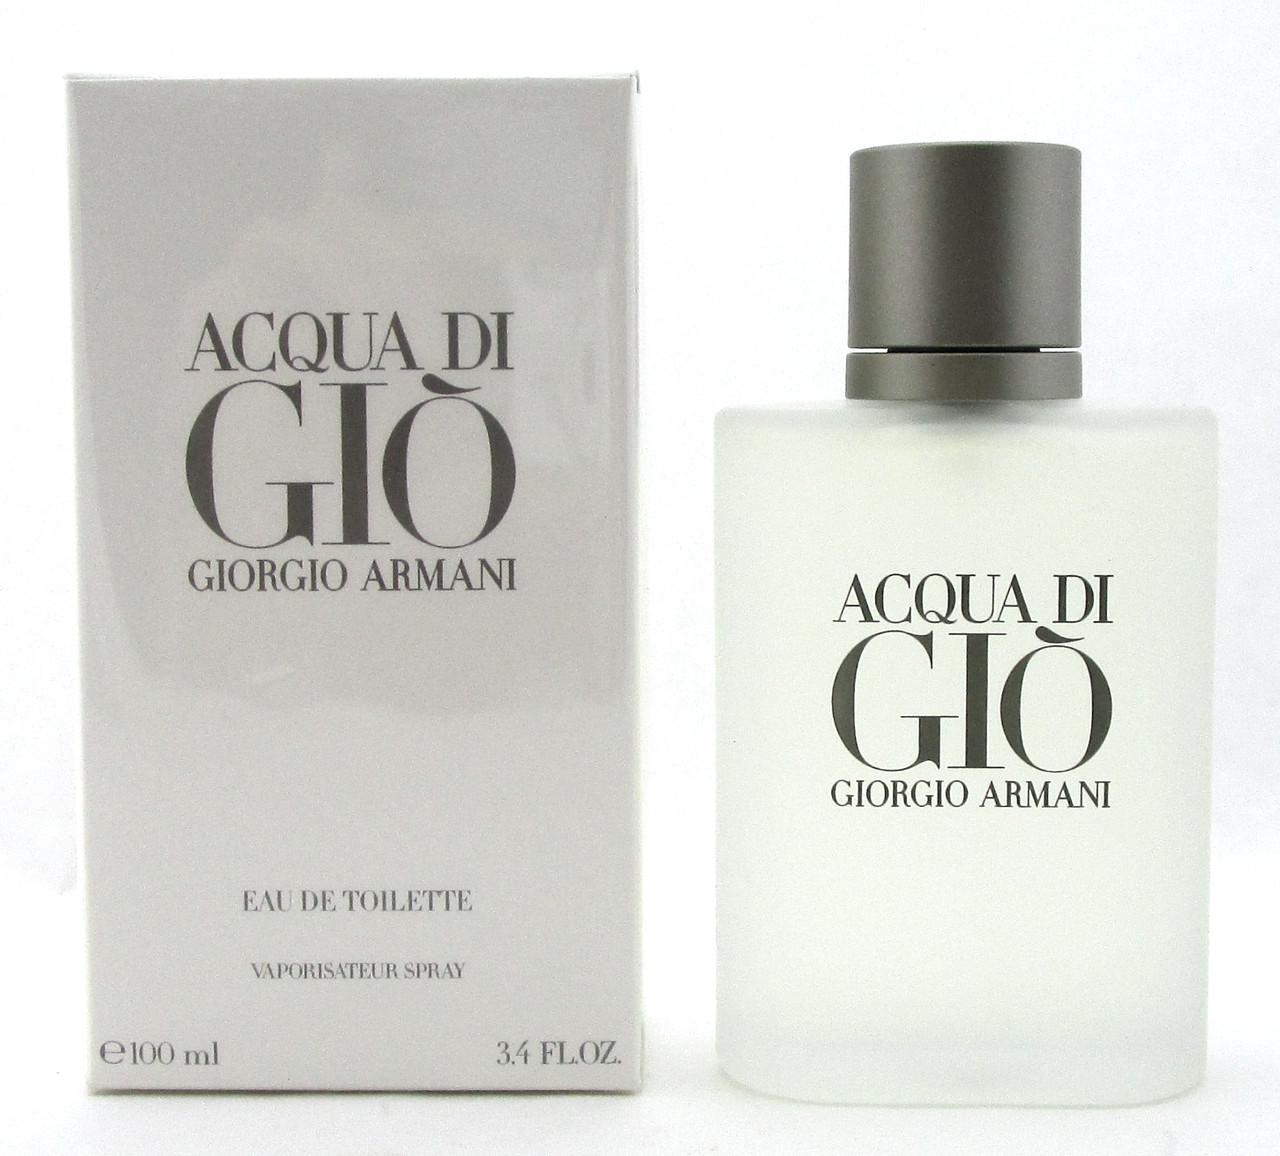 Acqua Di Gio by Giorgio Armani 3.4 oz./ 100 ml. Eau de Toilette Spray for  Men. New 